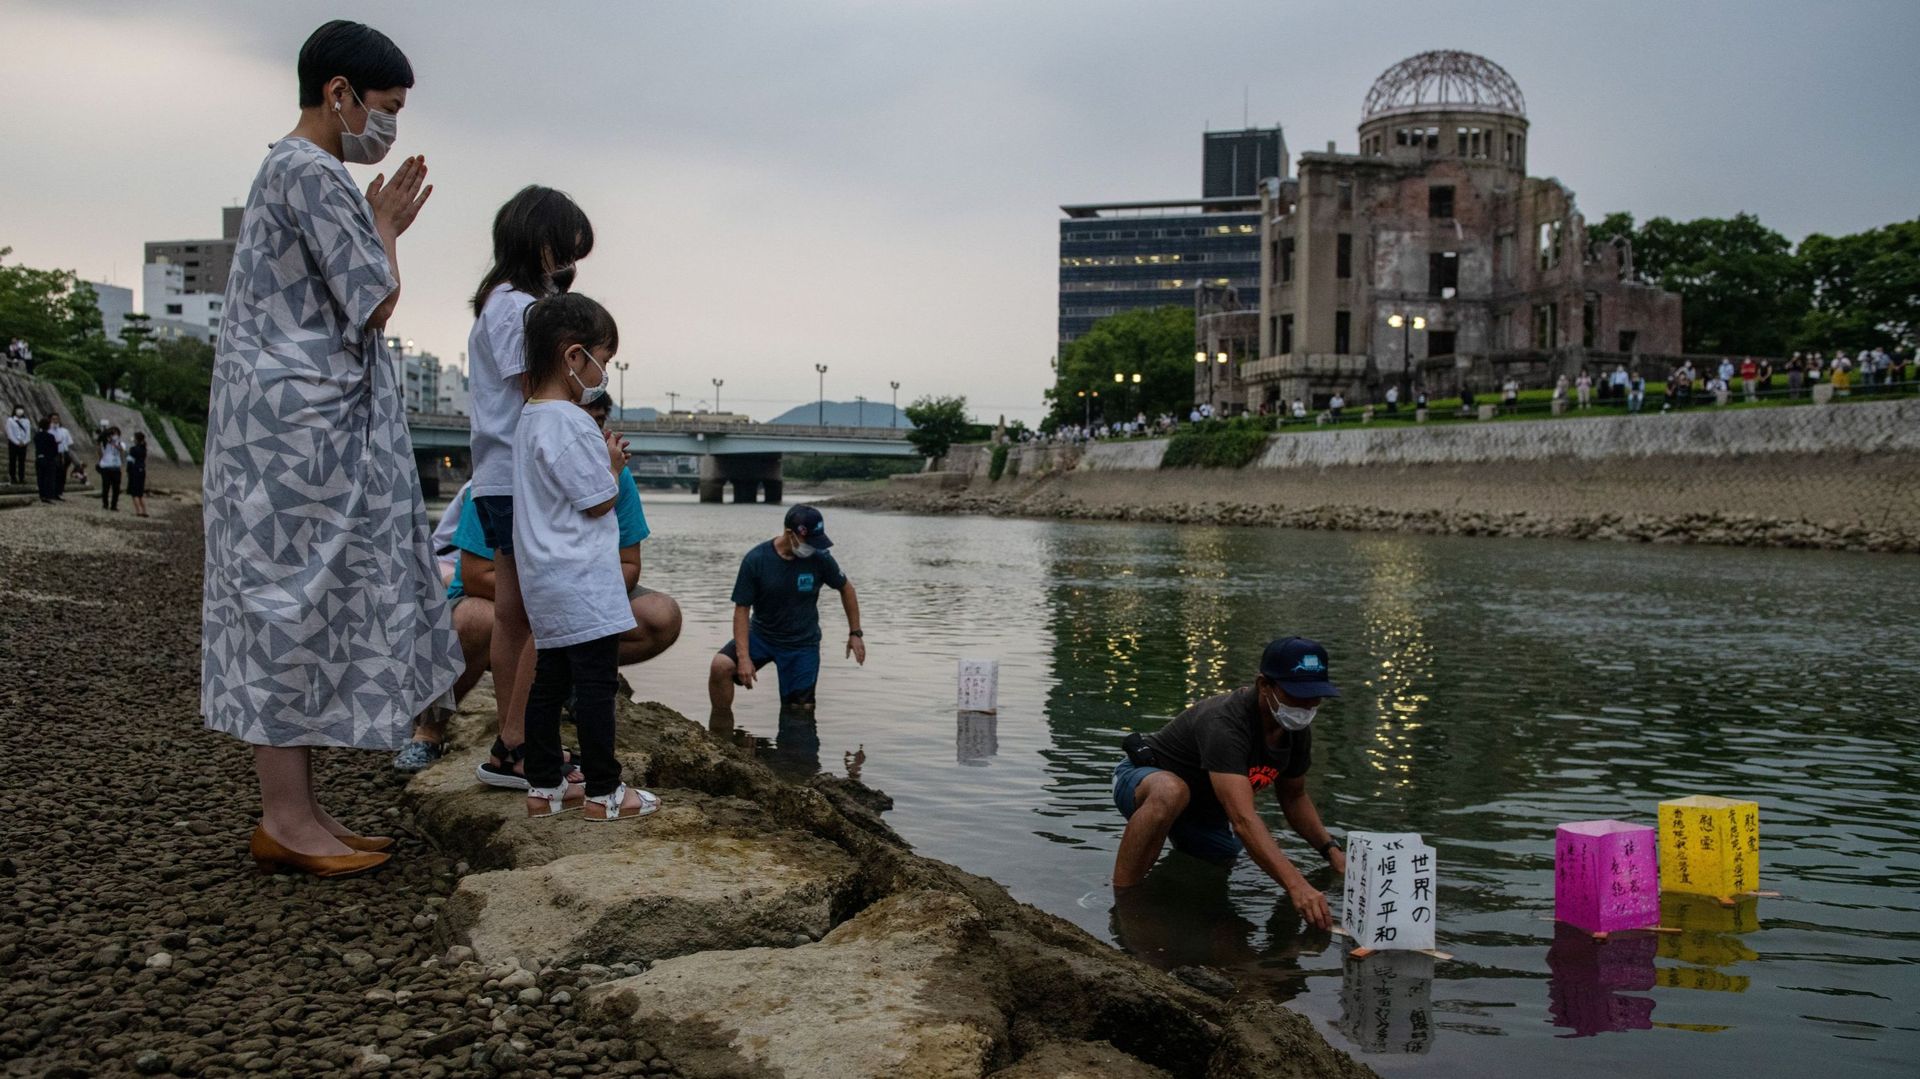 6 août 2020, 75e commémoration du bombardement atomique d’Hiroshima.